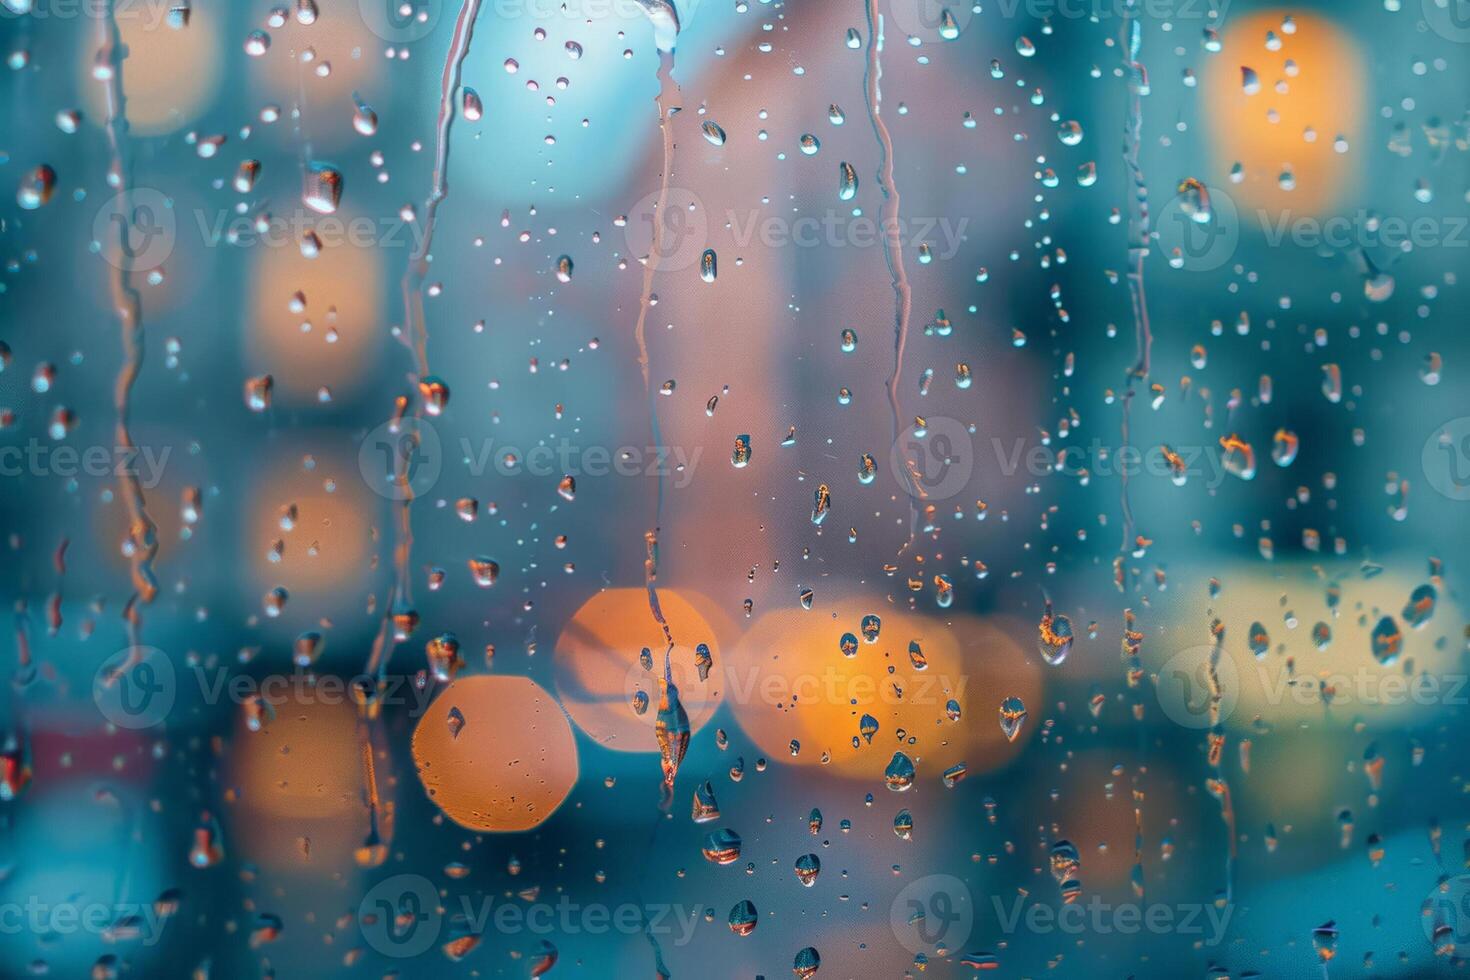 fechar acima do pingos de chuva atirando uma vidraça, embaçamento a Visão do uma encharcado urbano panorama lado de fora foto